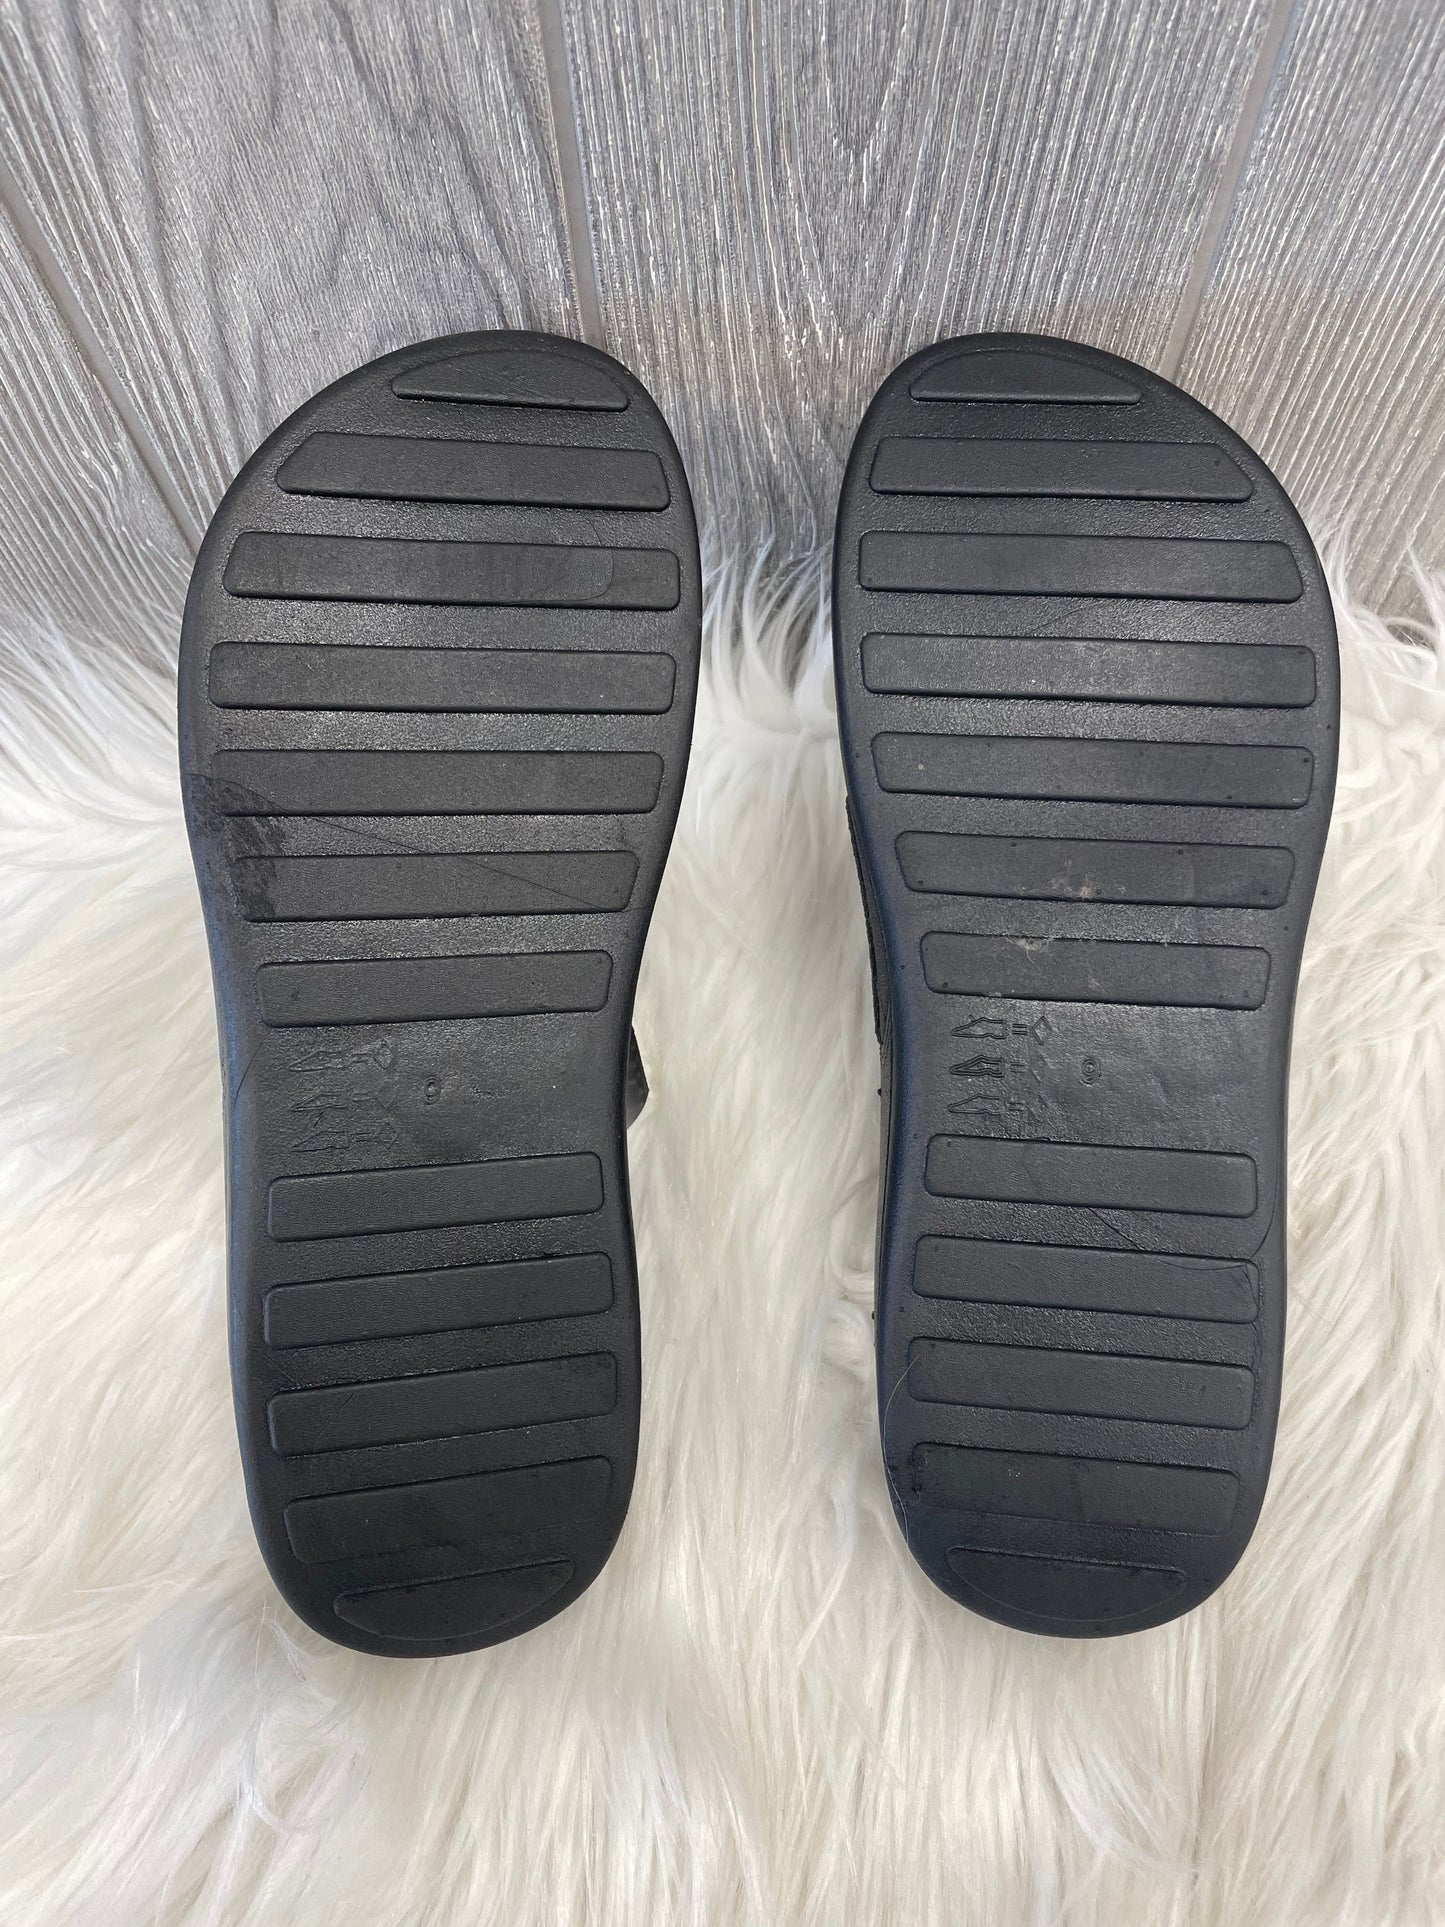 Black Sandals Flats Olivia Miller, Size 9